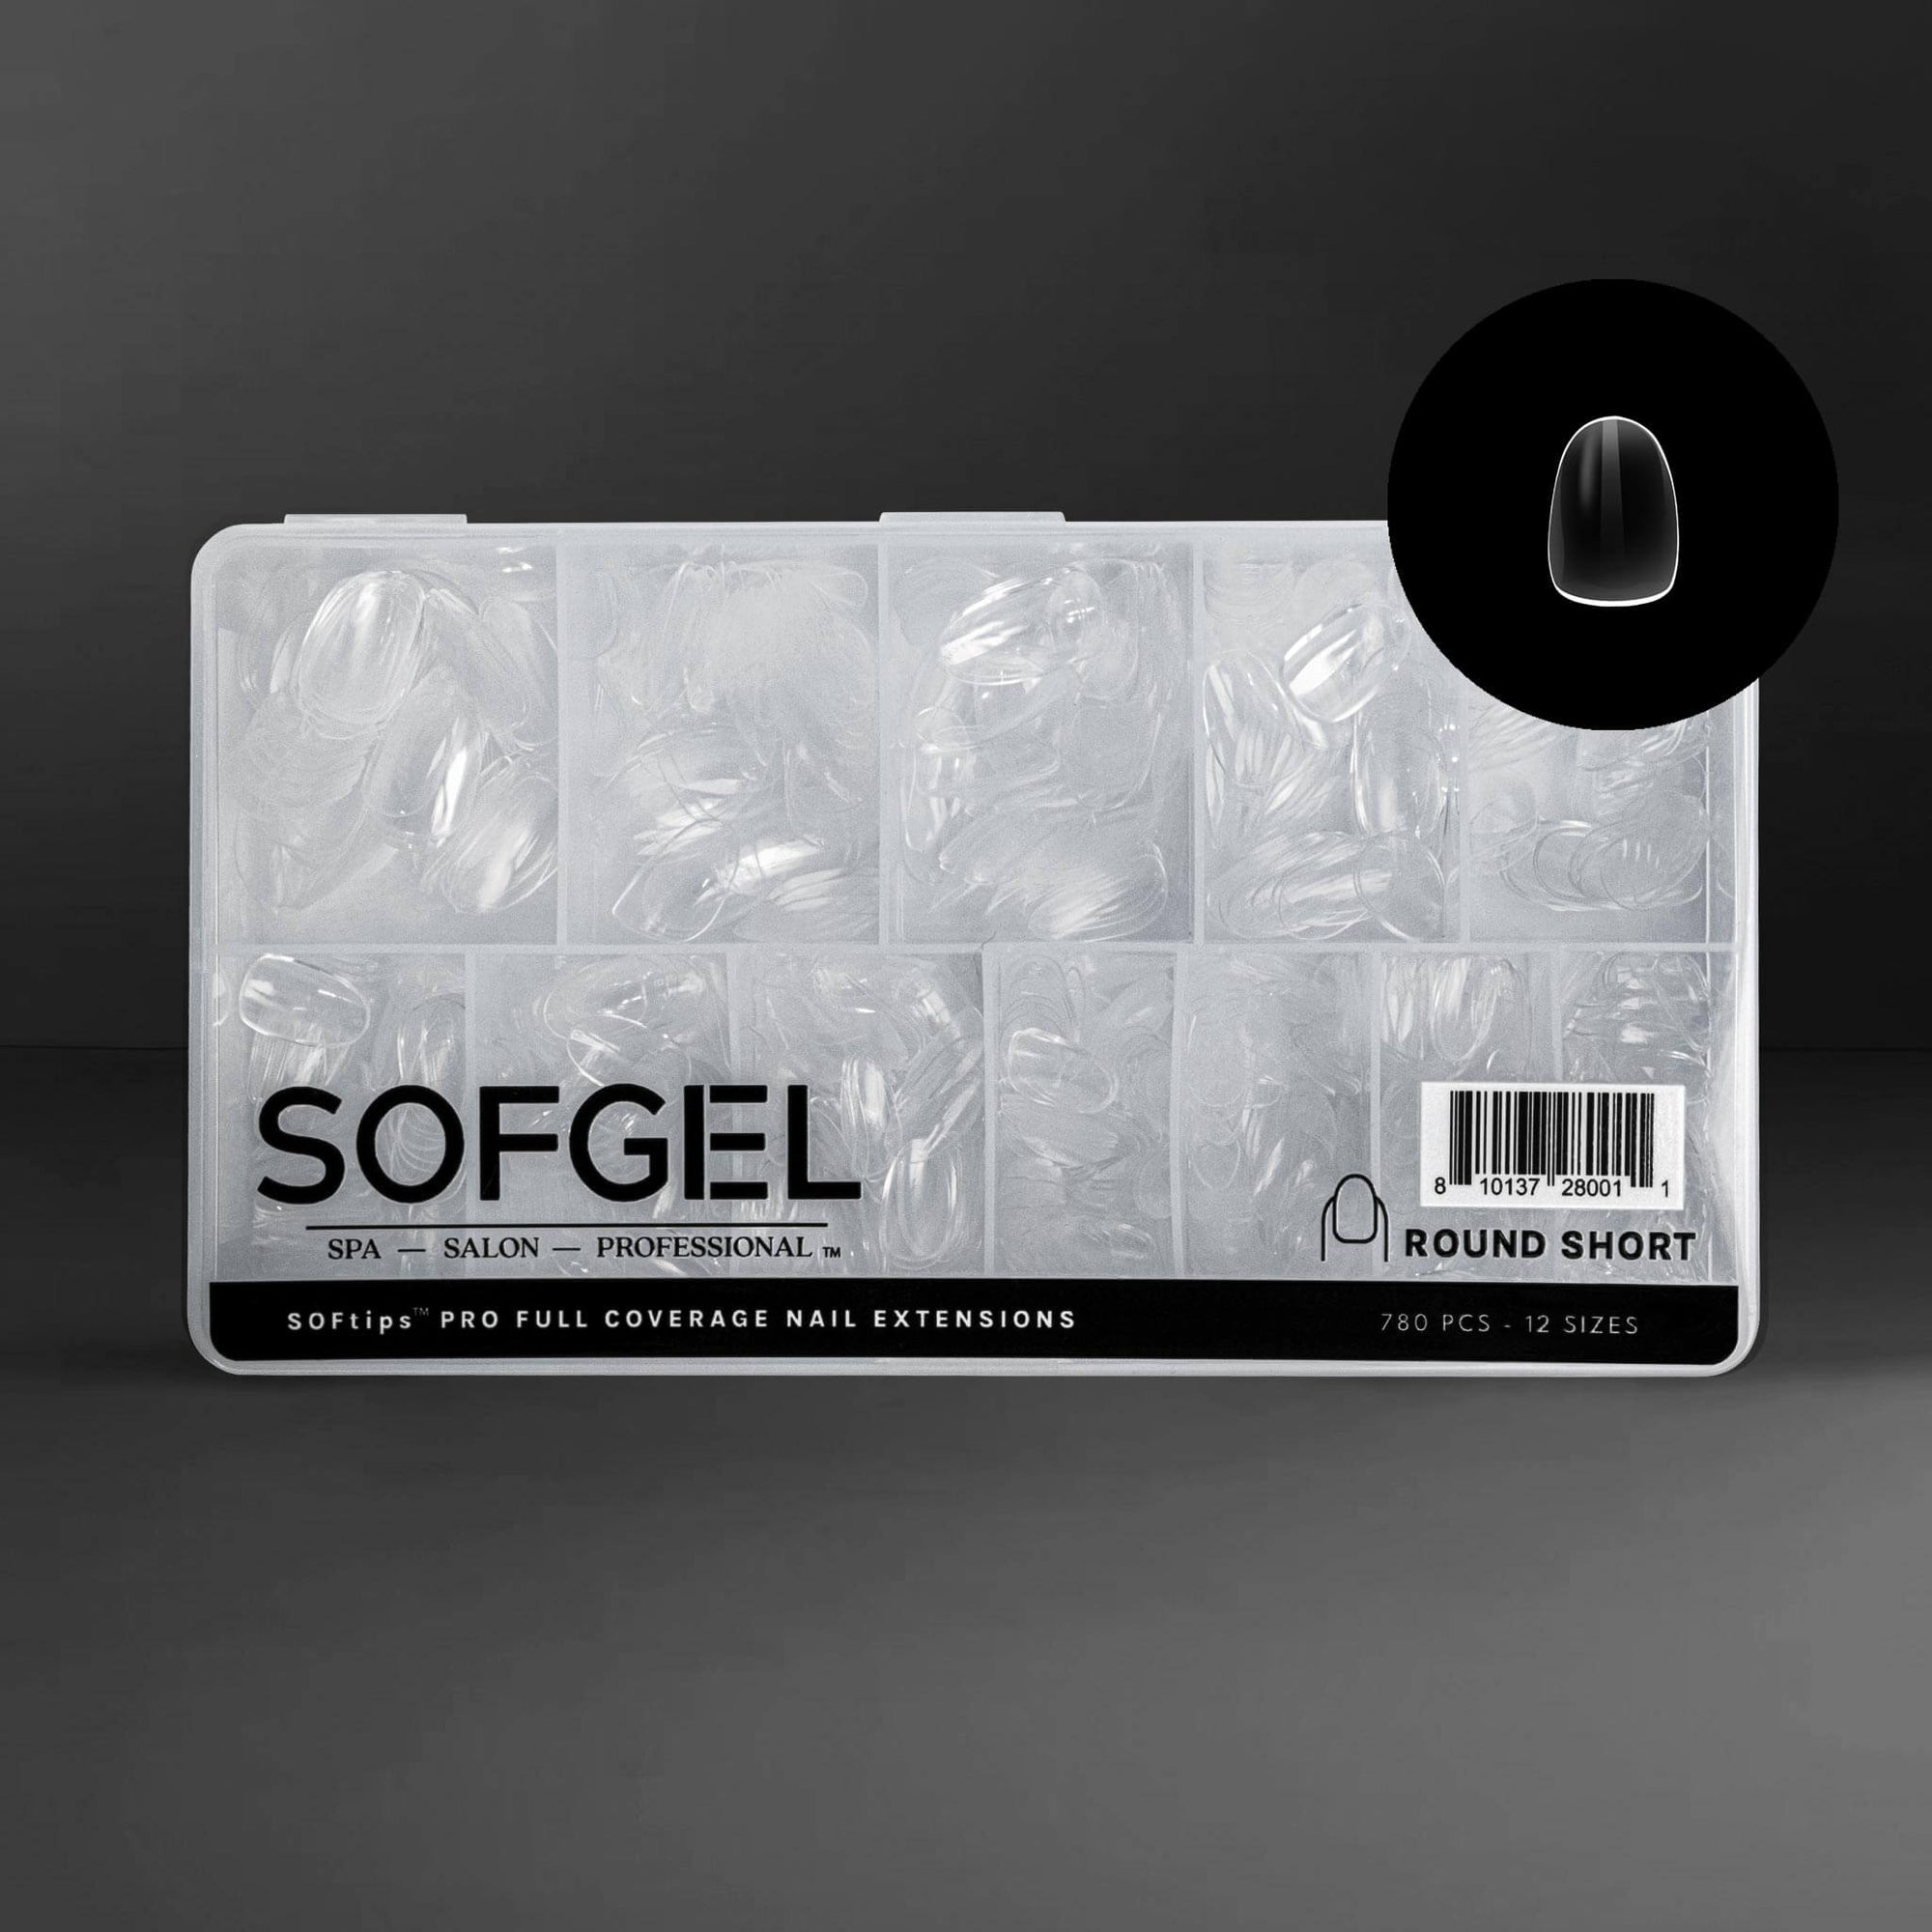 SOFGEL Full Cover Soft Gel Tips - Round Short